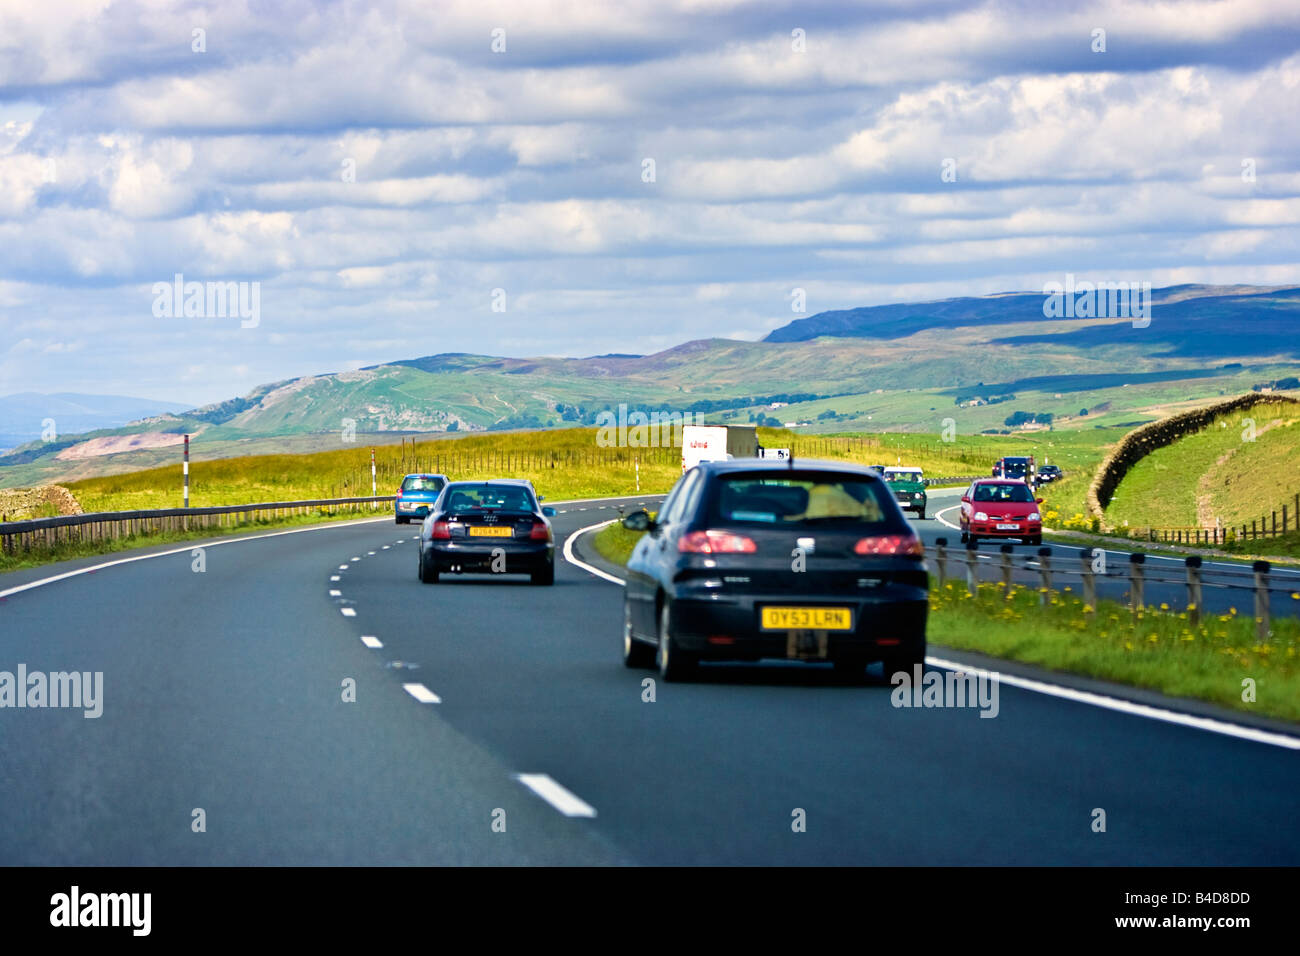 Les voitures sur l'A66 à deux voies, routes de campagne sur les collines en direction de Cumbria, Angleterre, Royaume-Uni Banque D'Images